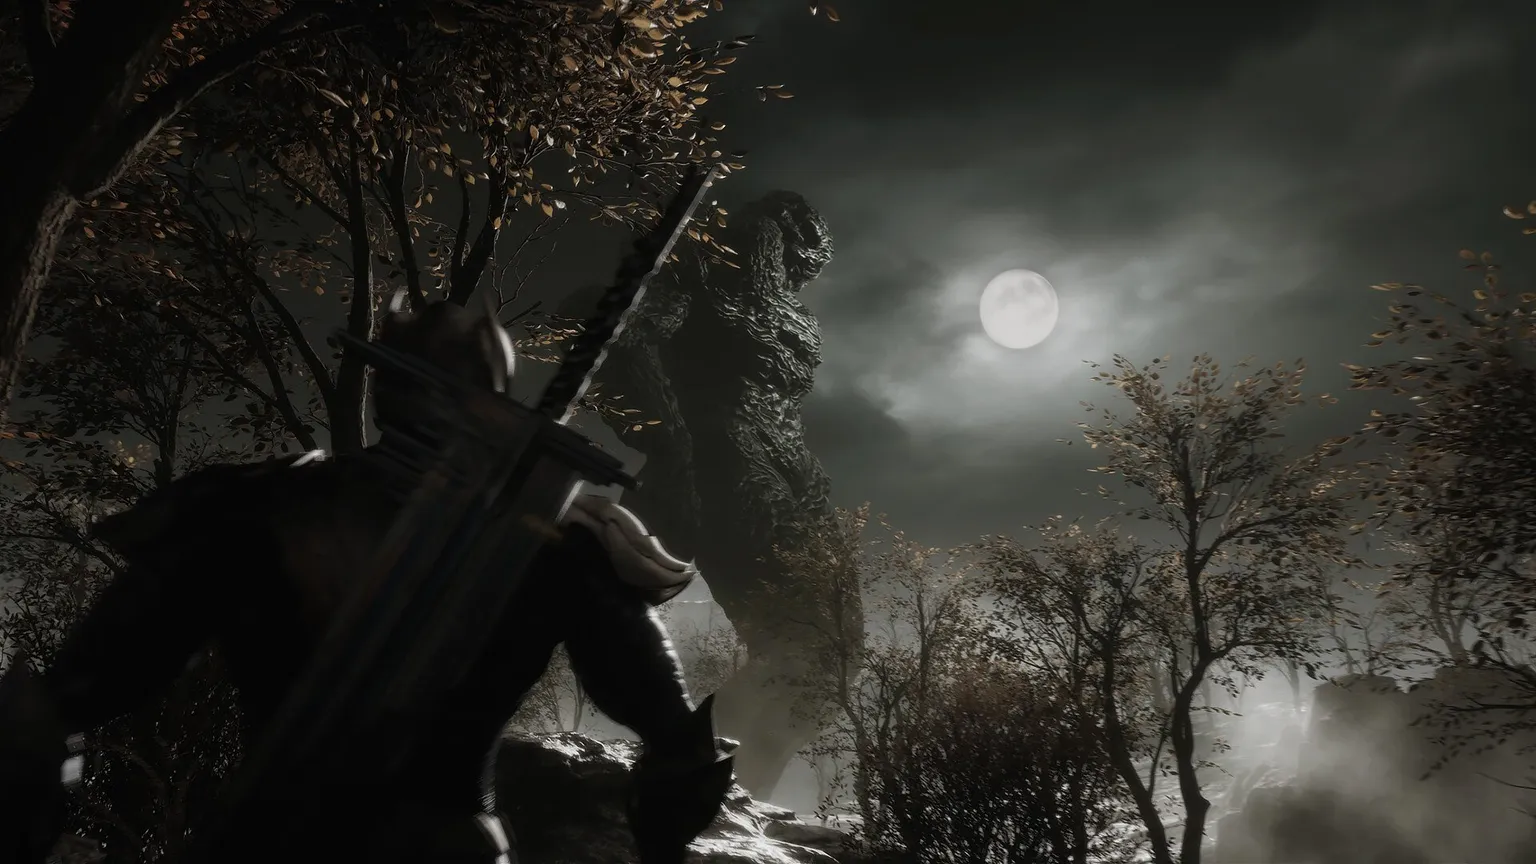 لقطة شاشة تظهر شخصية بسيف ينظر إلى السماء المظلمة الملبدة بالغيوم مع اكتمال القمر ونوع غدزيلا الضخم الذي يشبه الحجر فوقه.